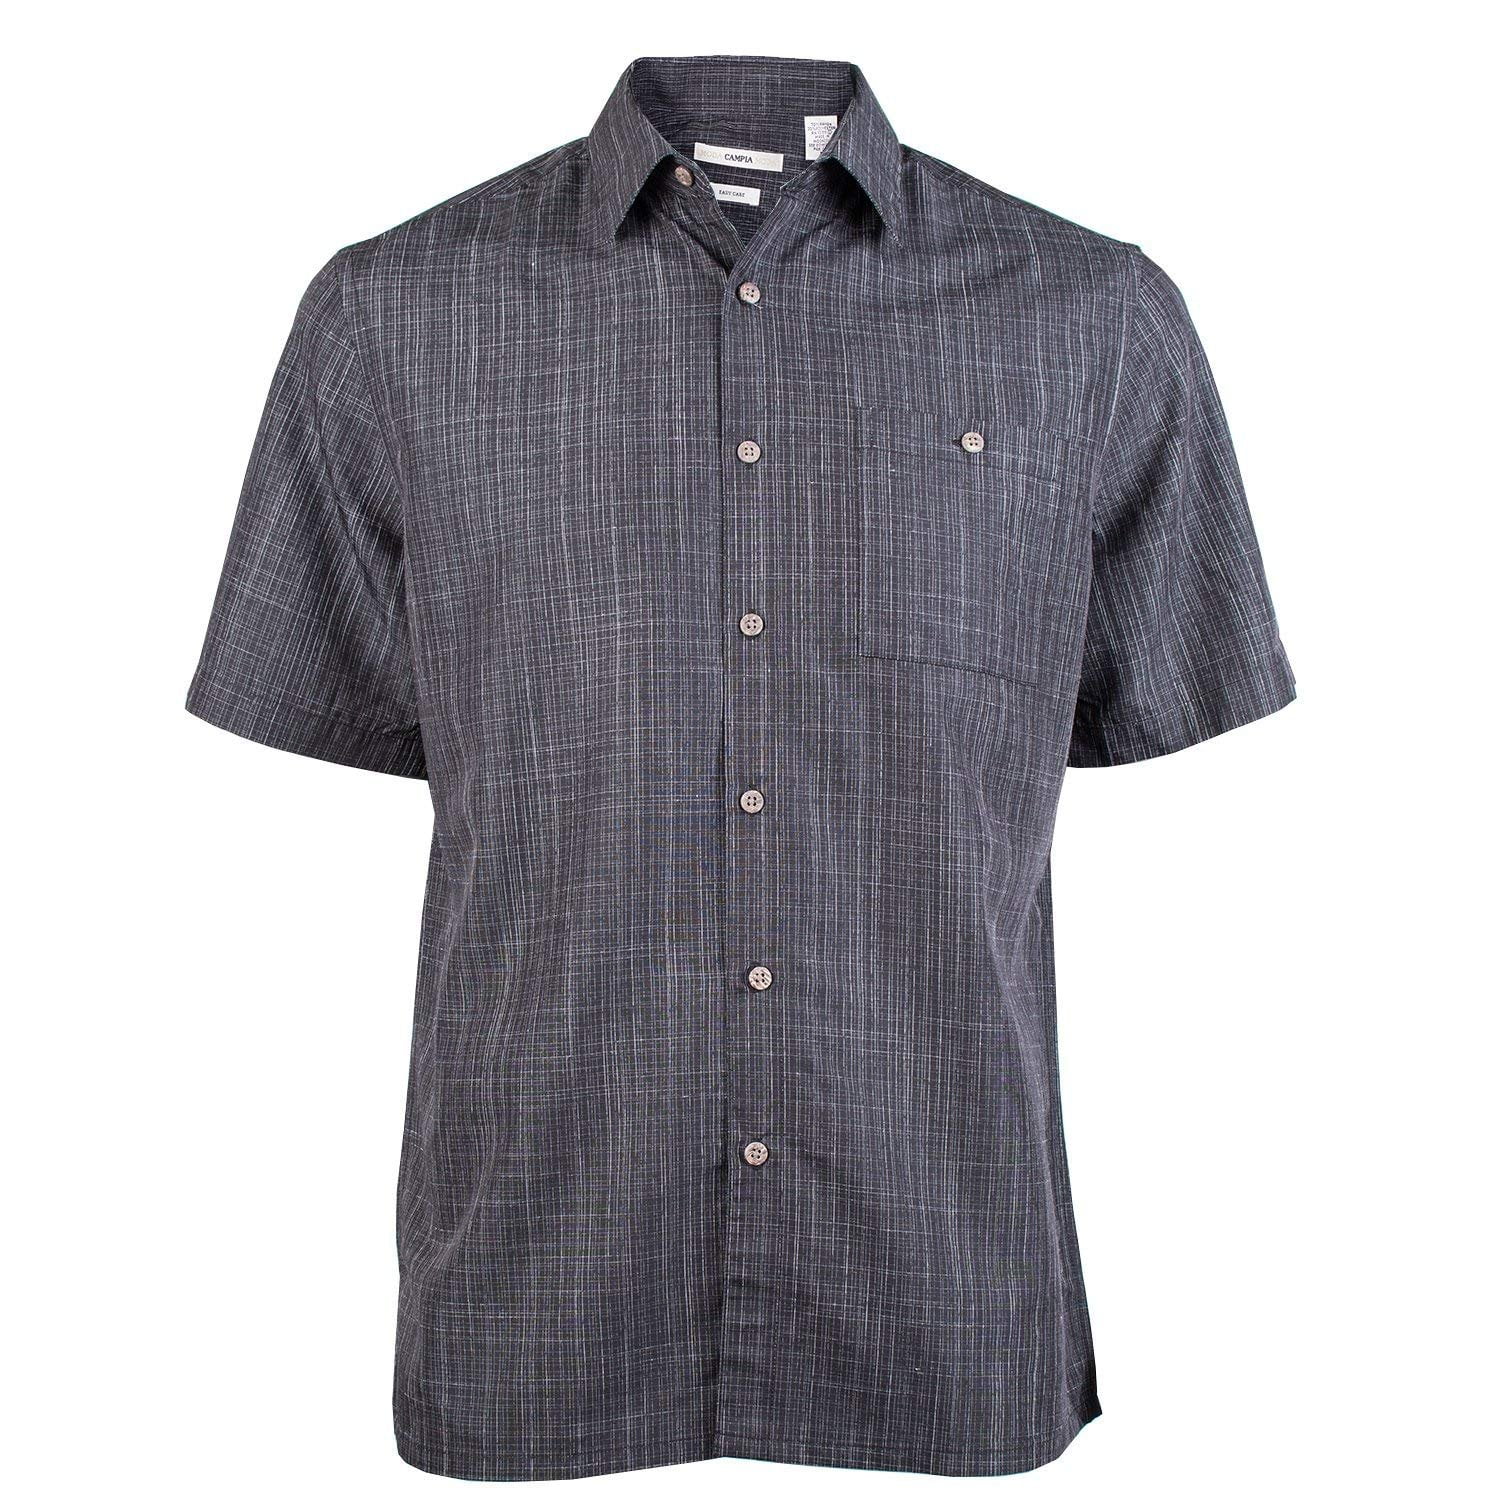 Campia Men's Textured Solid Shirt (Black 18, M) - Walmart.com